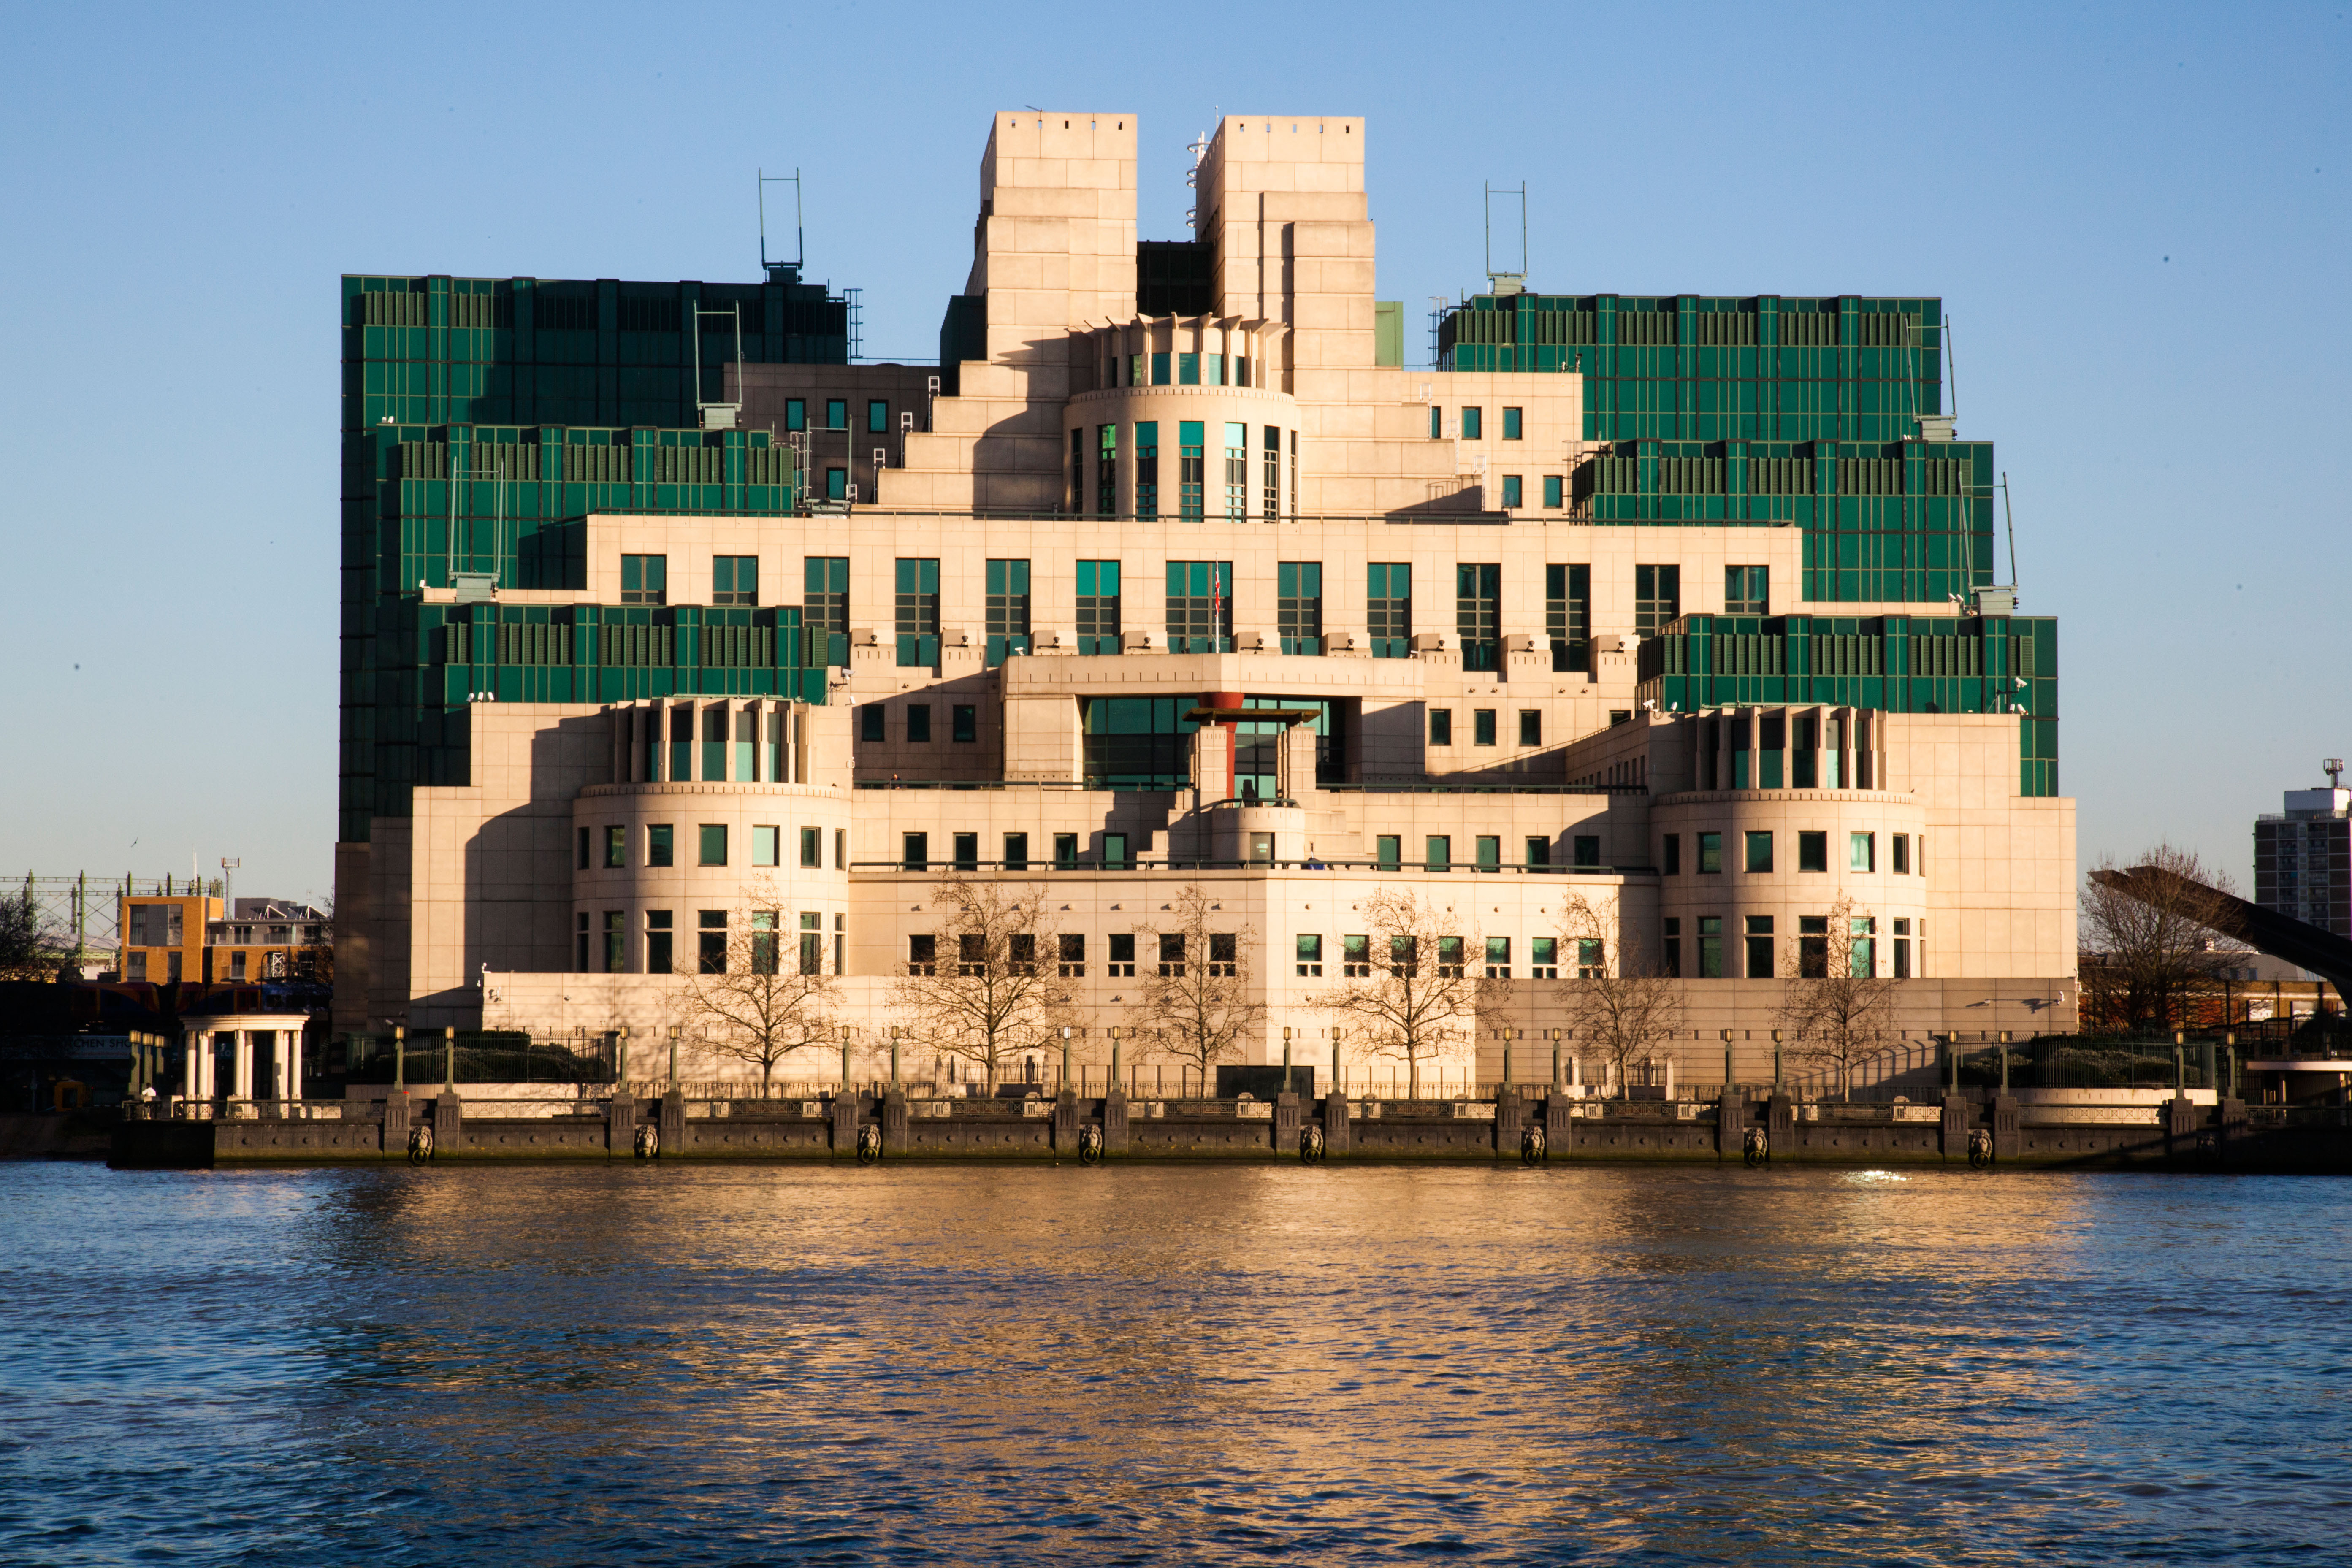 Richard Moore, jefe del MI6, pide disculpas por no dejar ser espías a homosexuales